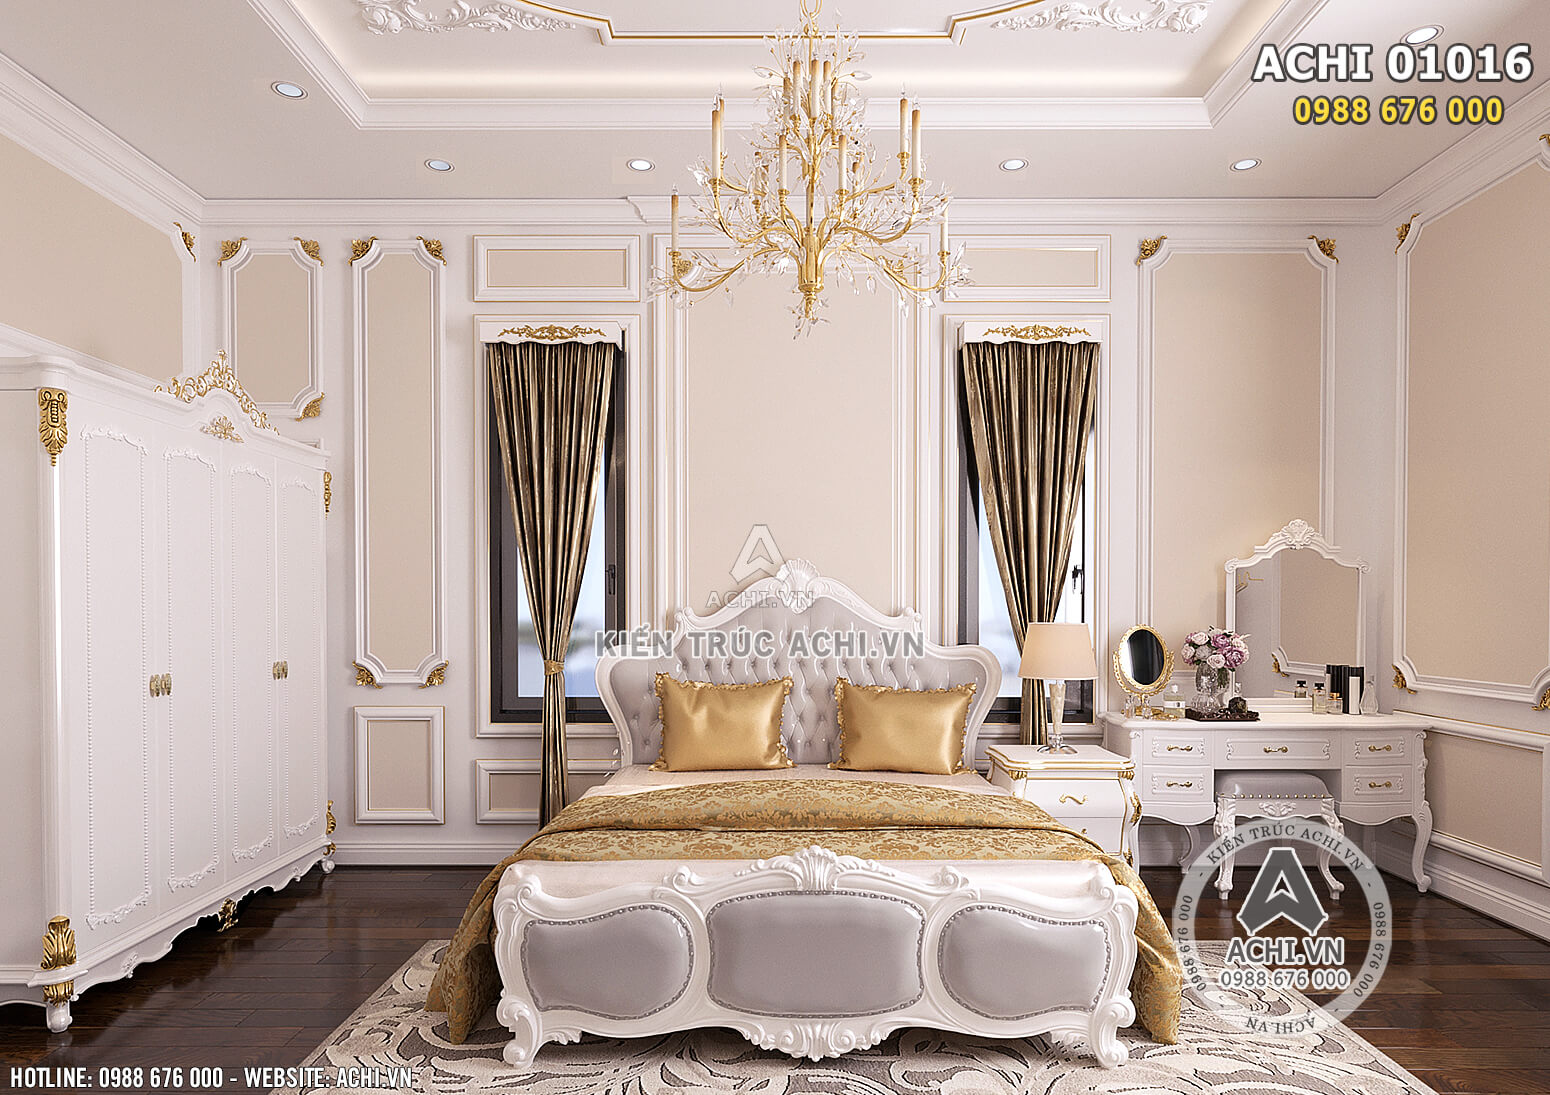 Hình ảnh: Giường ngủ phong cách Châu Âu cho không gian phòng ngủ Master - ACHI 01016